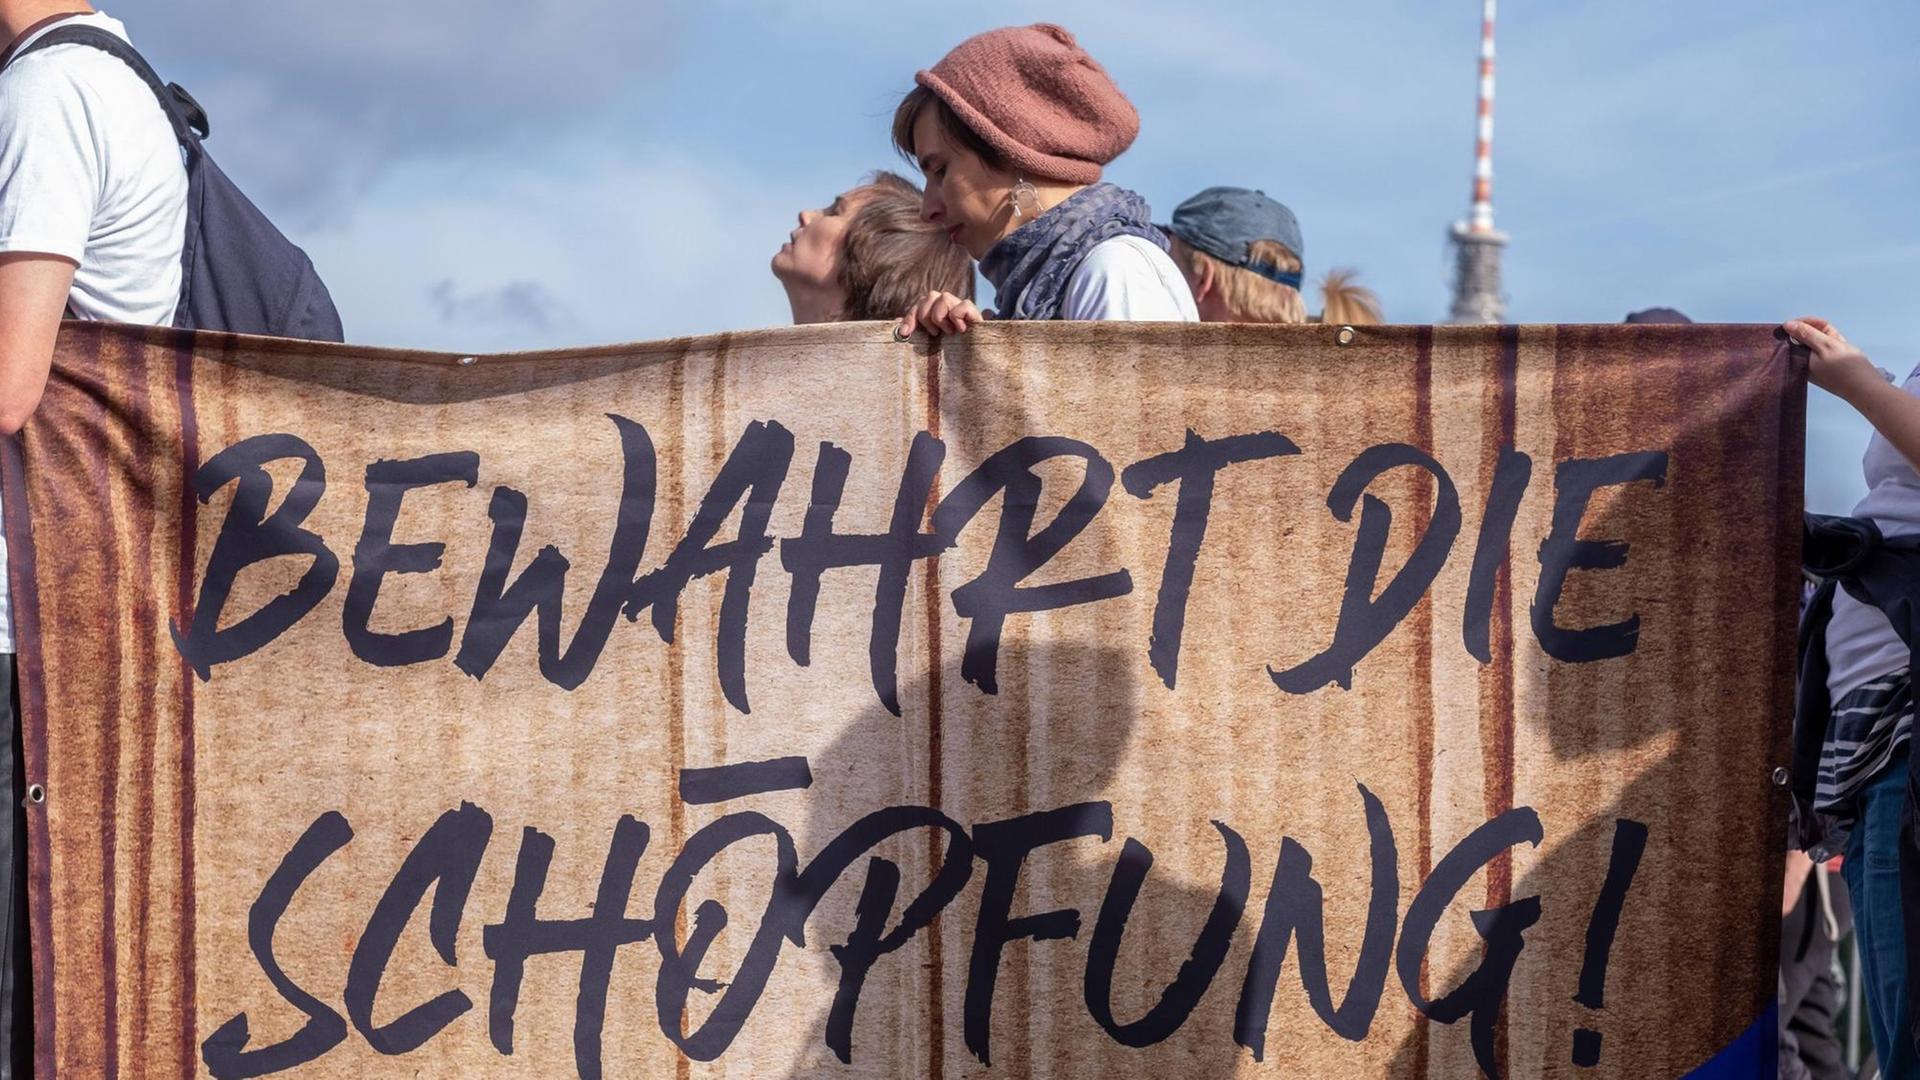 Protestierende der Fridays-for-Future-Bewegung halten ein Transparent mit der Aufschrift "Bewahrt die Schöpfung" in die Höhe. Deutschland, Berlin, 20.09.2019